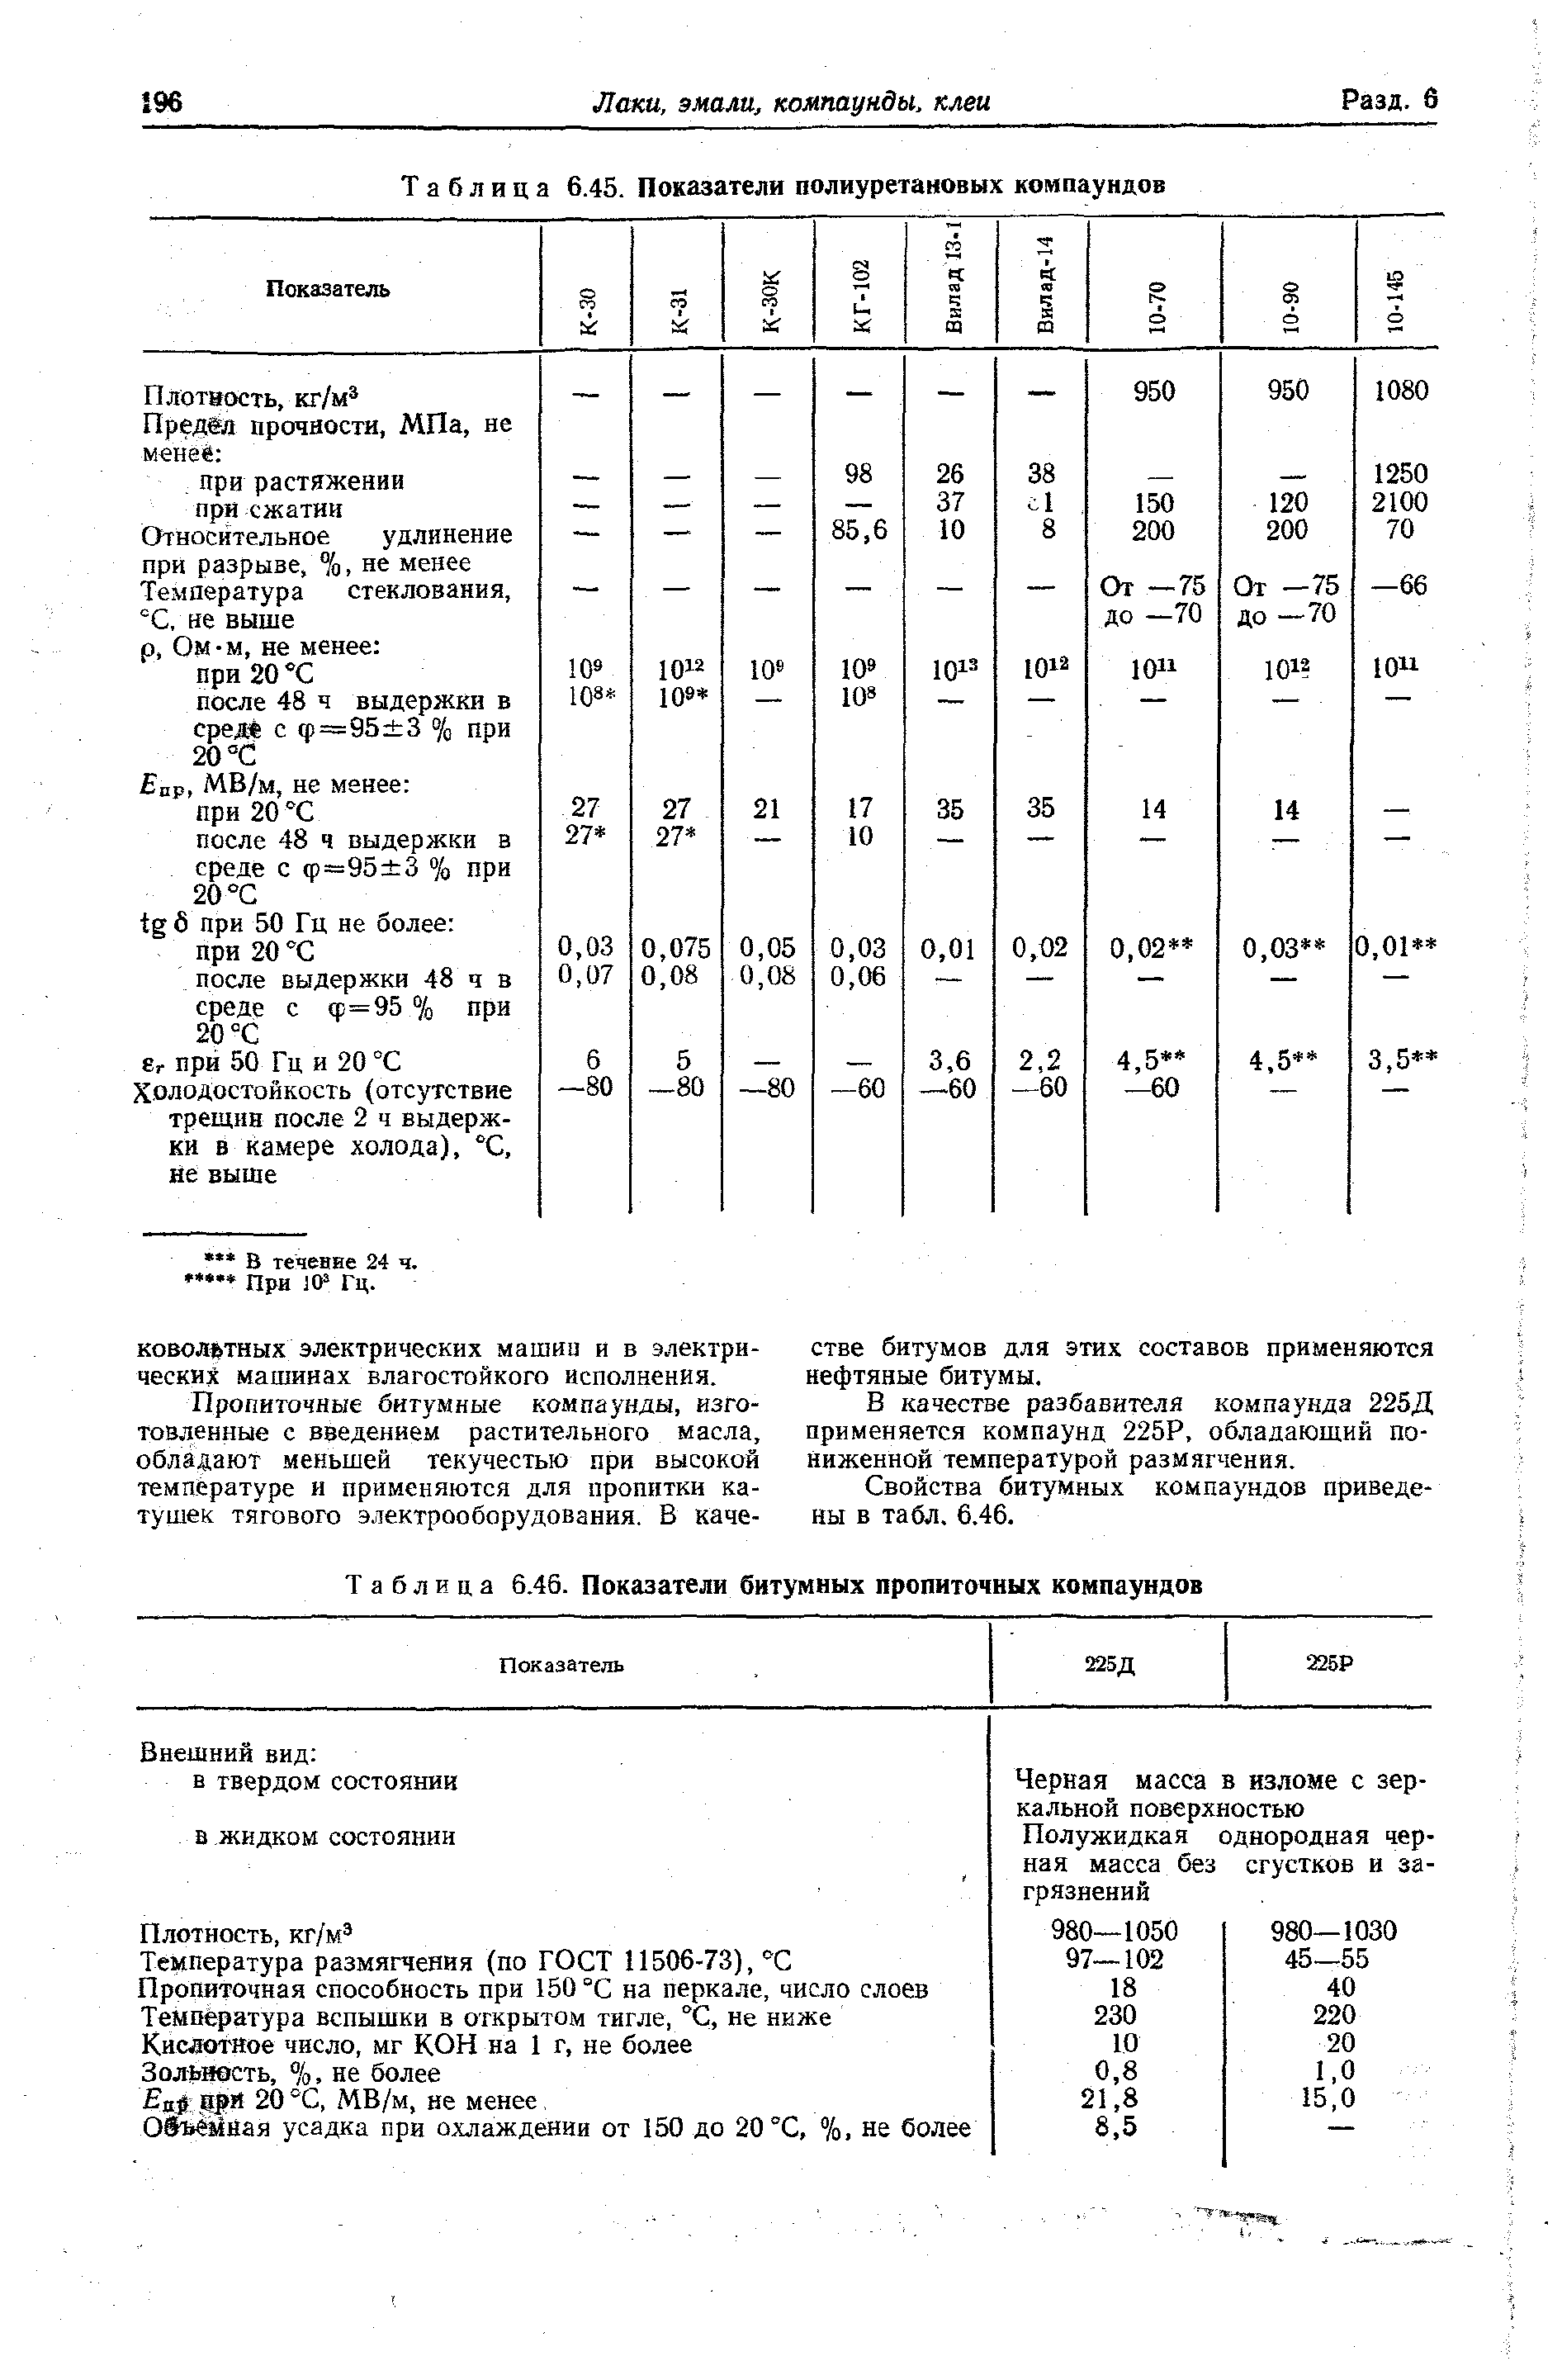 Таблица 6.46. Показатели битумных пропиточных компаундов
